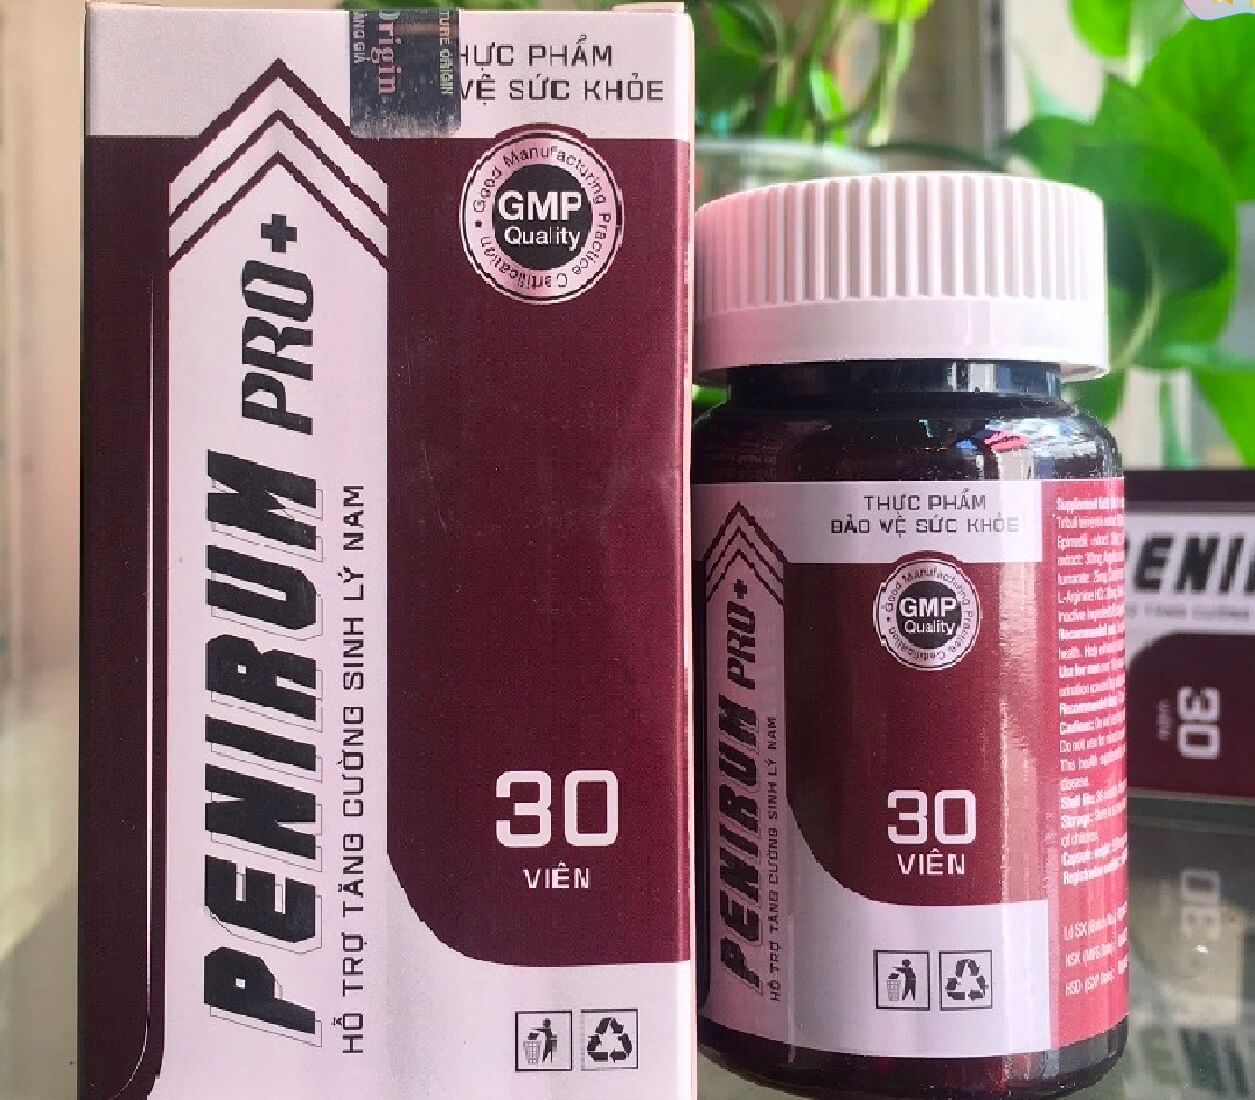 Penirum Pro+ có bán ở hiệu thuốc không hình 4